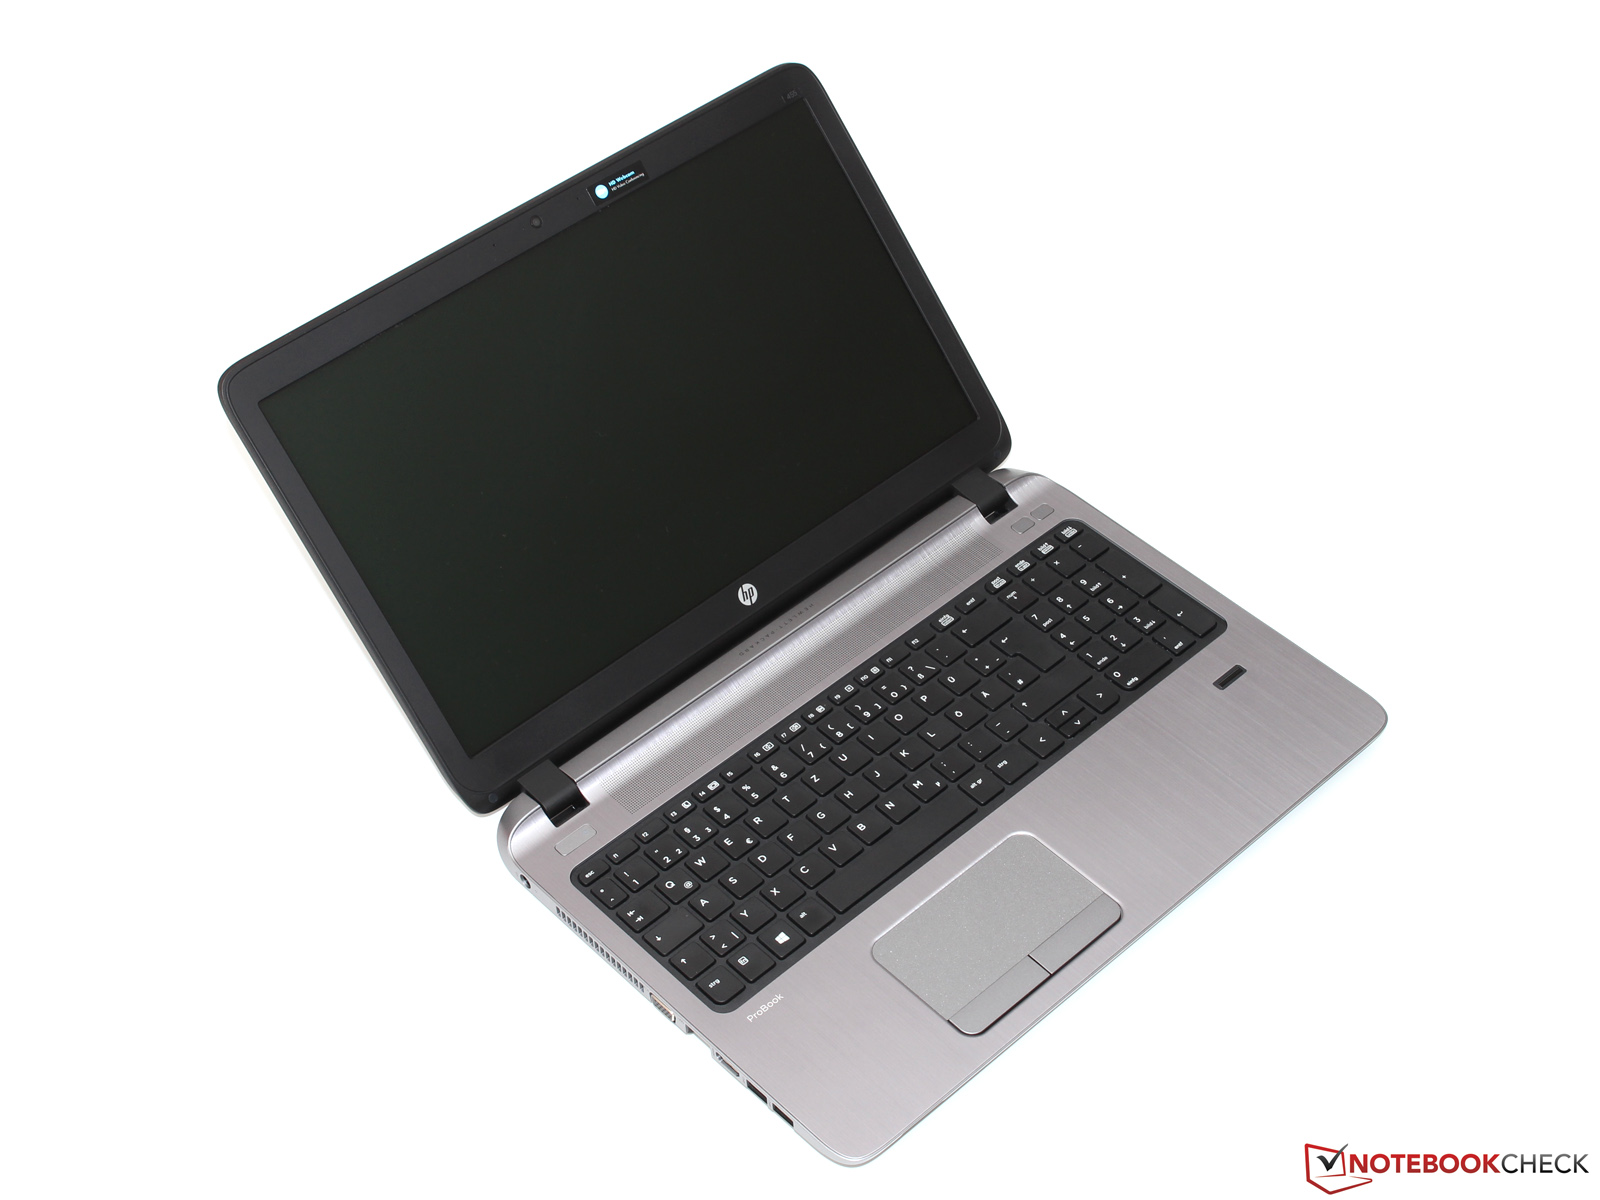 ProBook 445 G2 Notebook PC